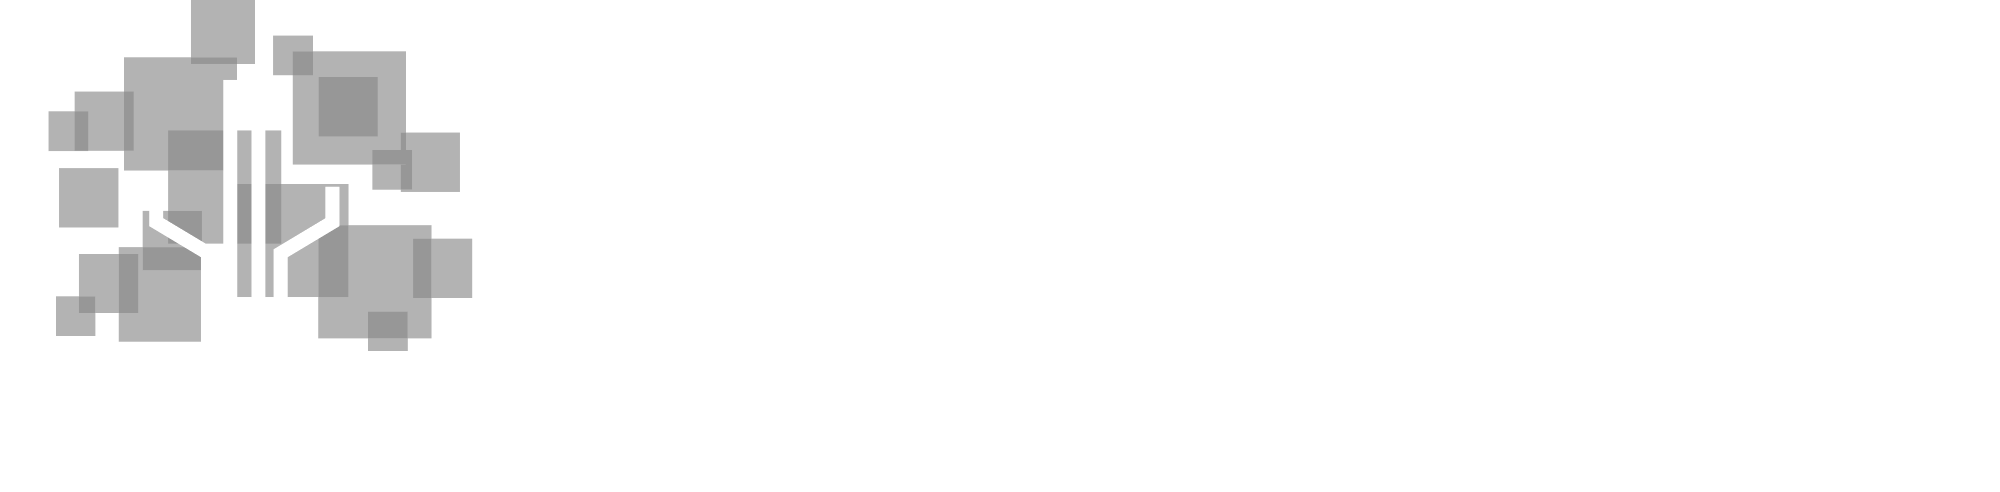 Family Health Data Network Full White